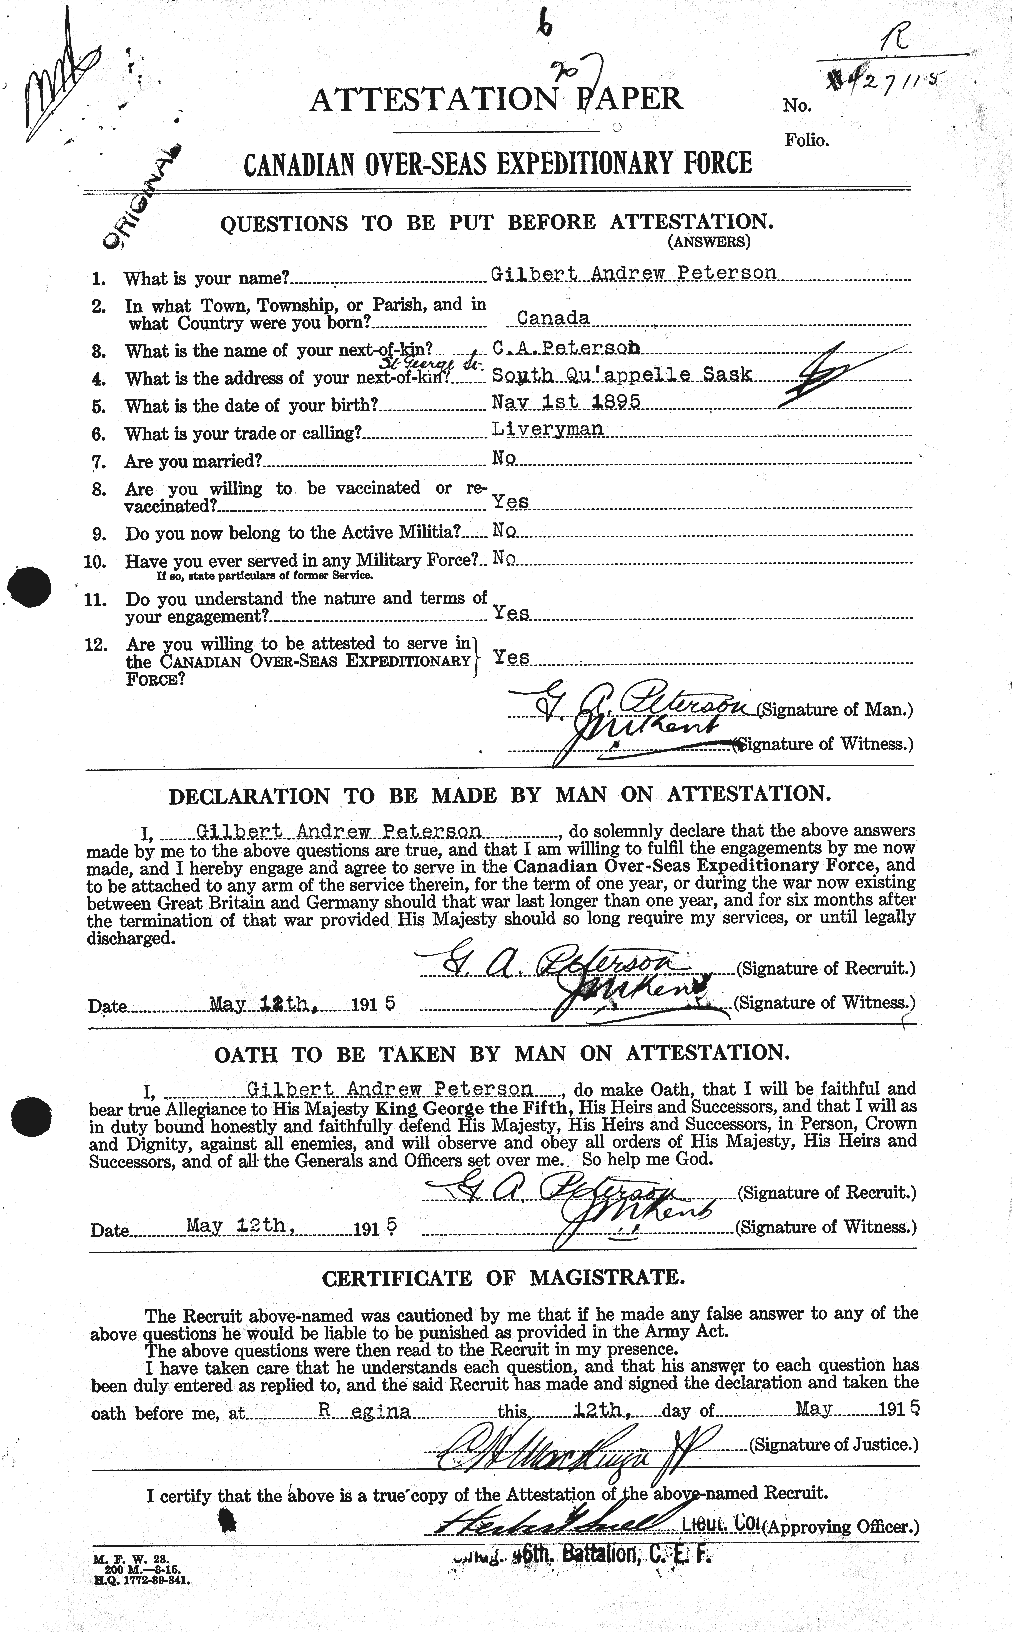 Dossiers du Personnel de la Première Guerre mondiale - CEC 575897a